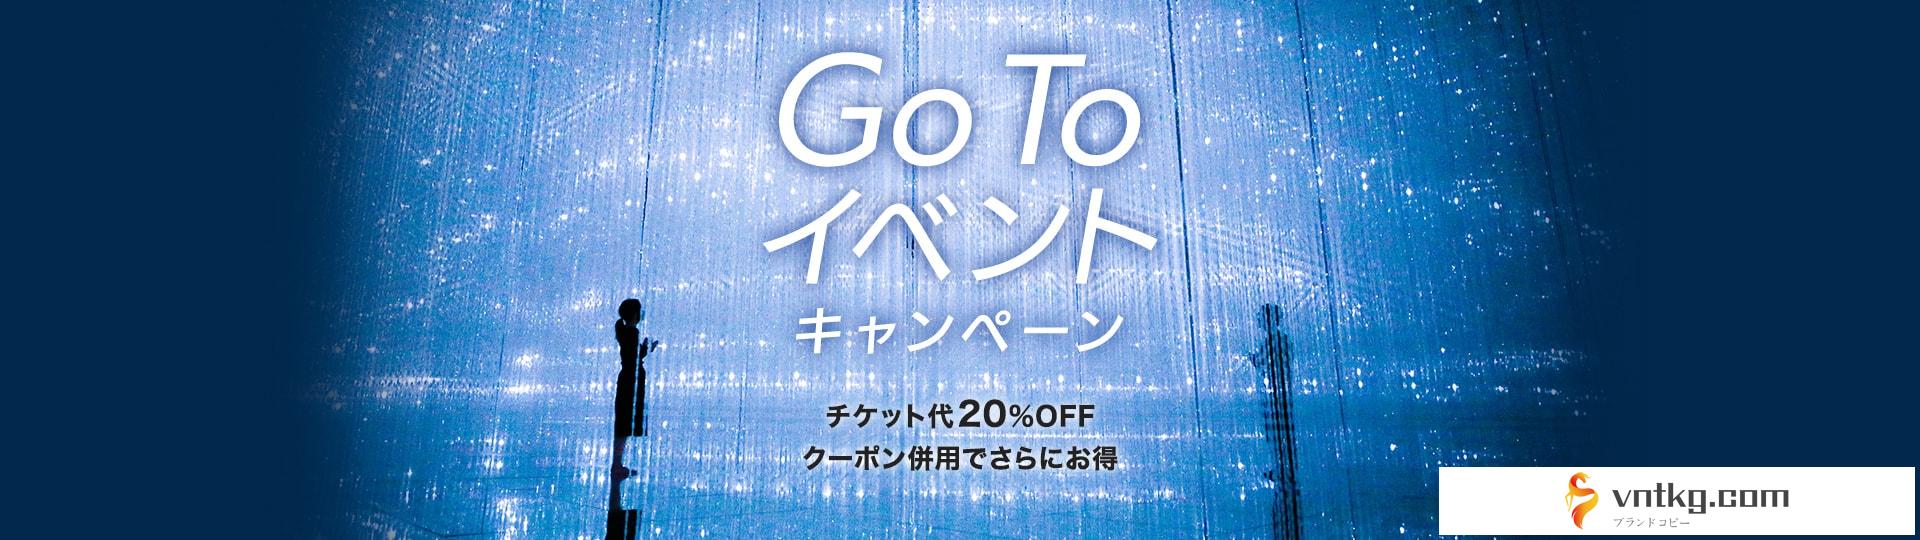 Go Toイベントキャンペーン｜チケット代20%OFF、クーポン併用でさらにお得